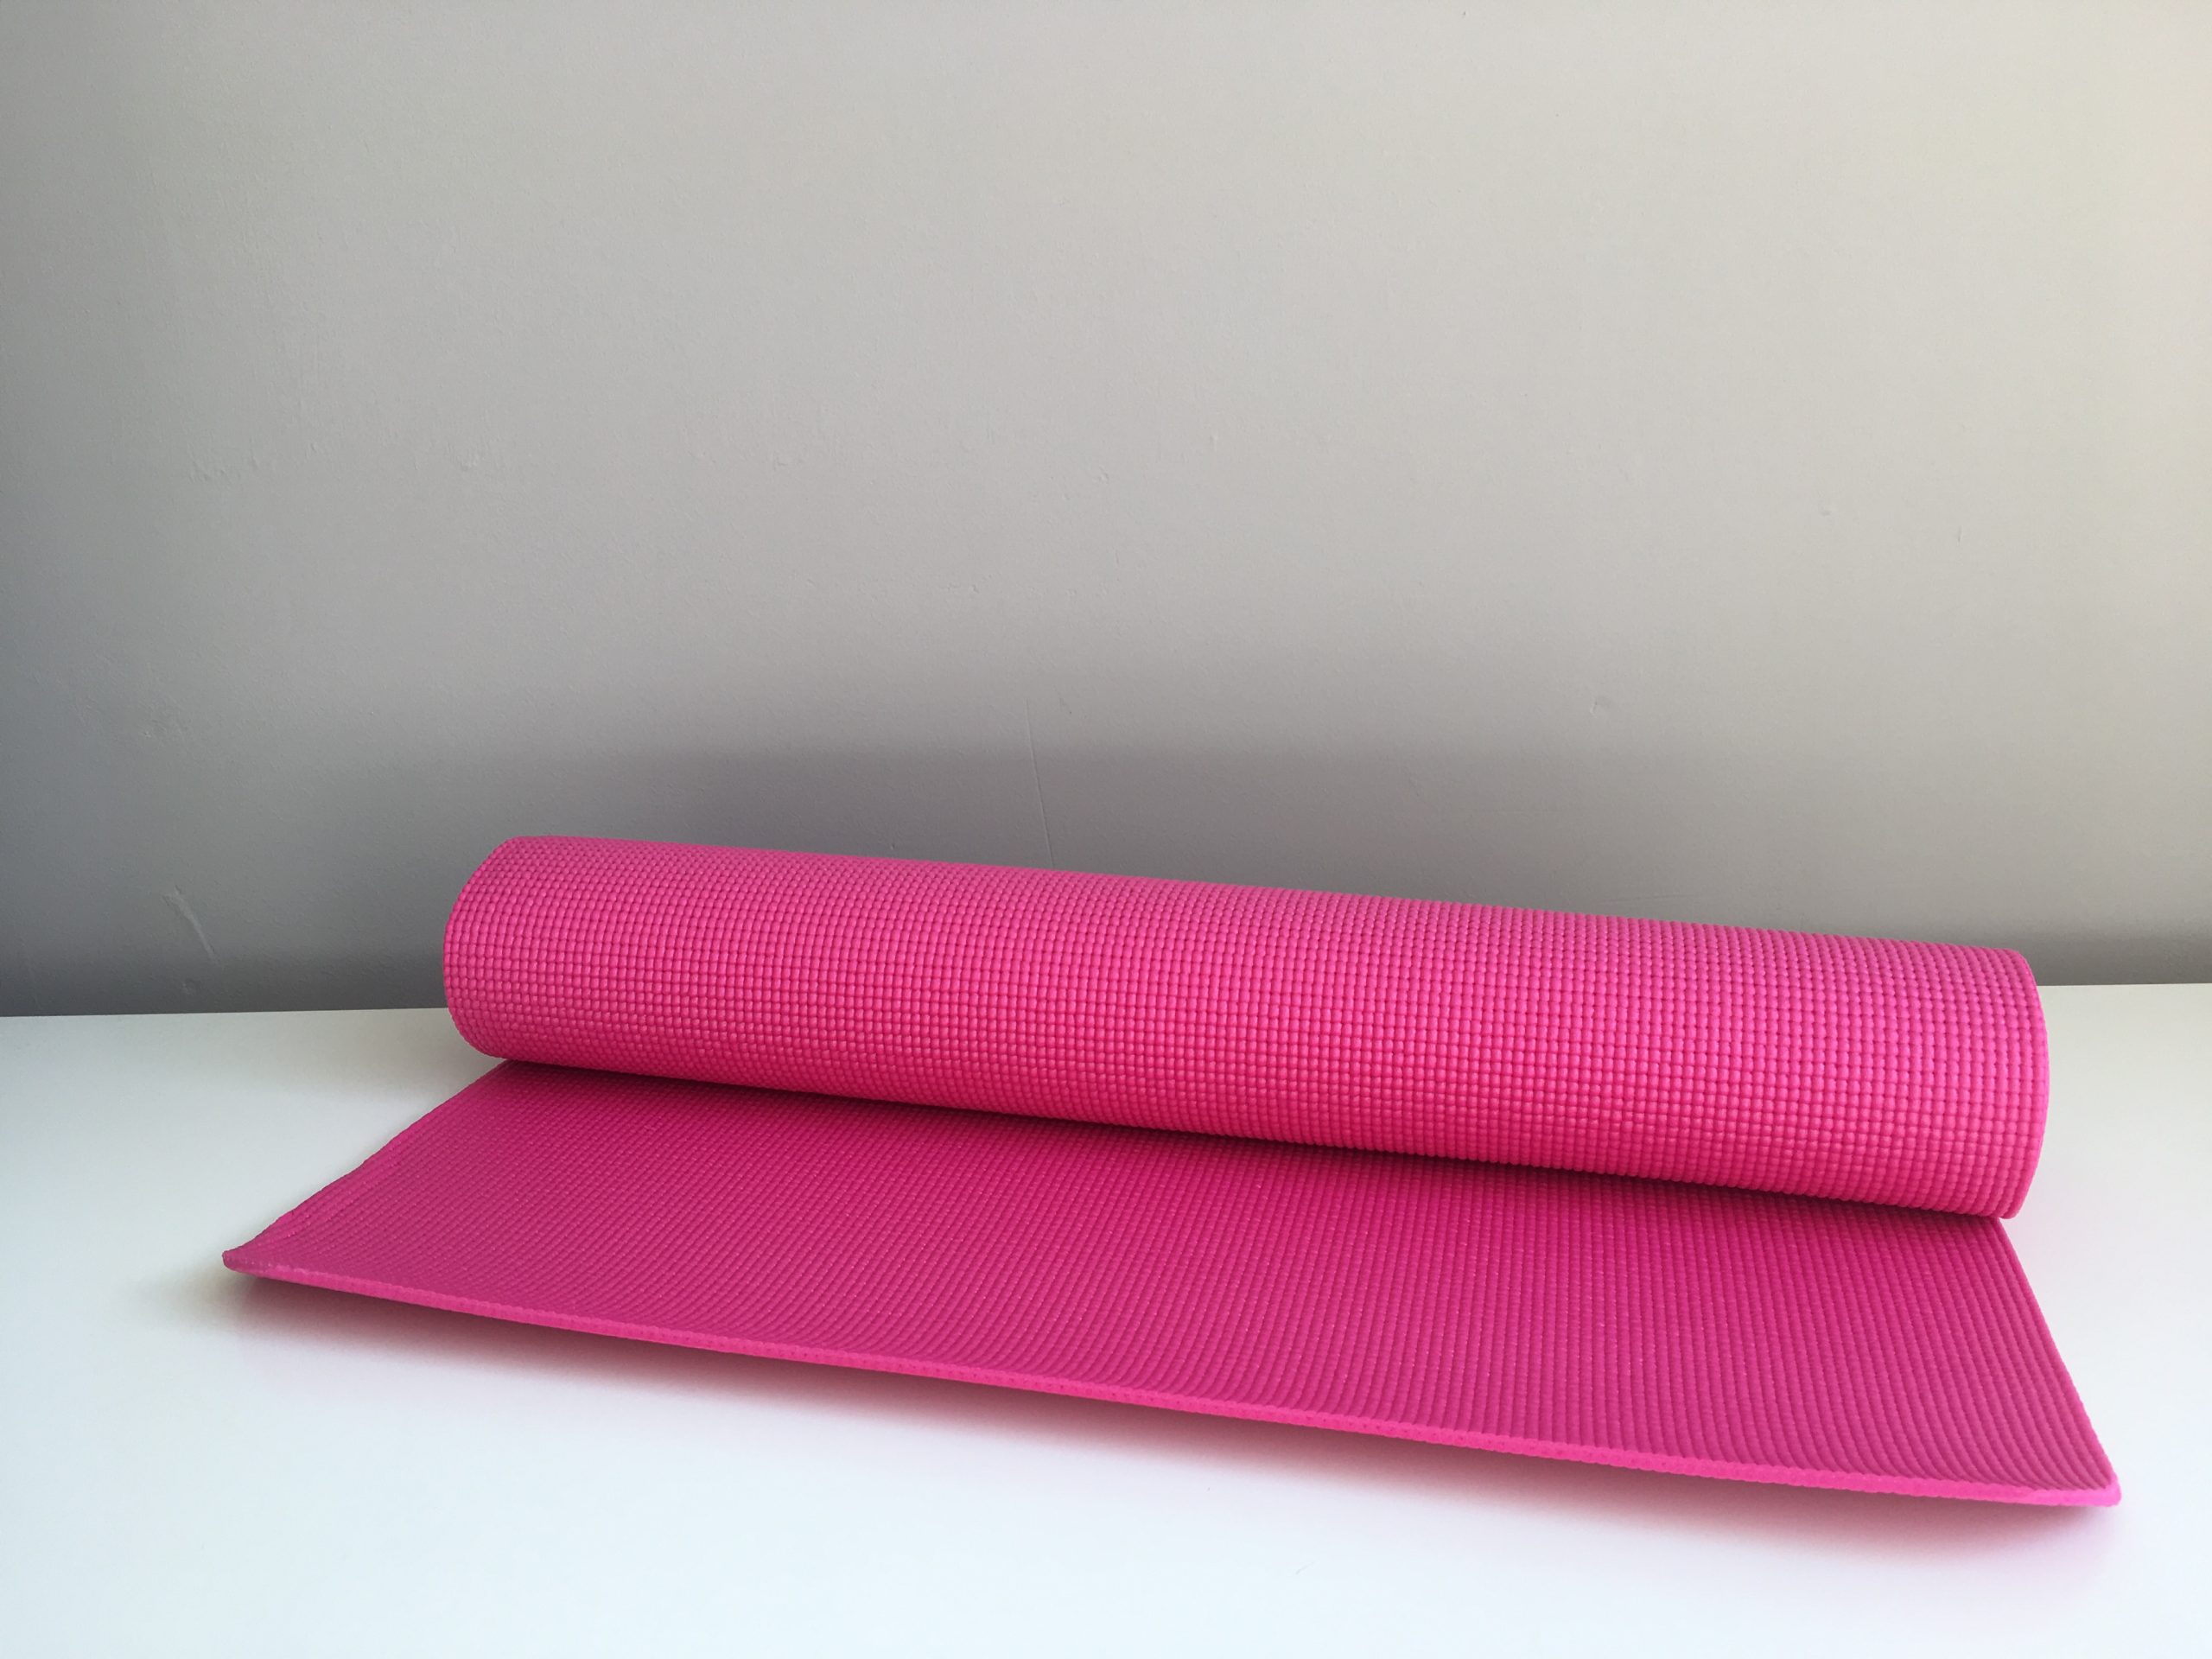 ritme Onze onderneming Geneeskunde Yoga mat 4,5 mm dik diverse kleuren - Simone Kamping